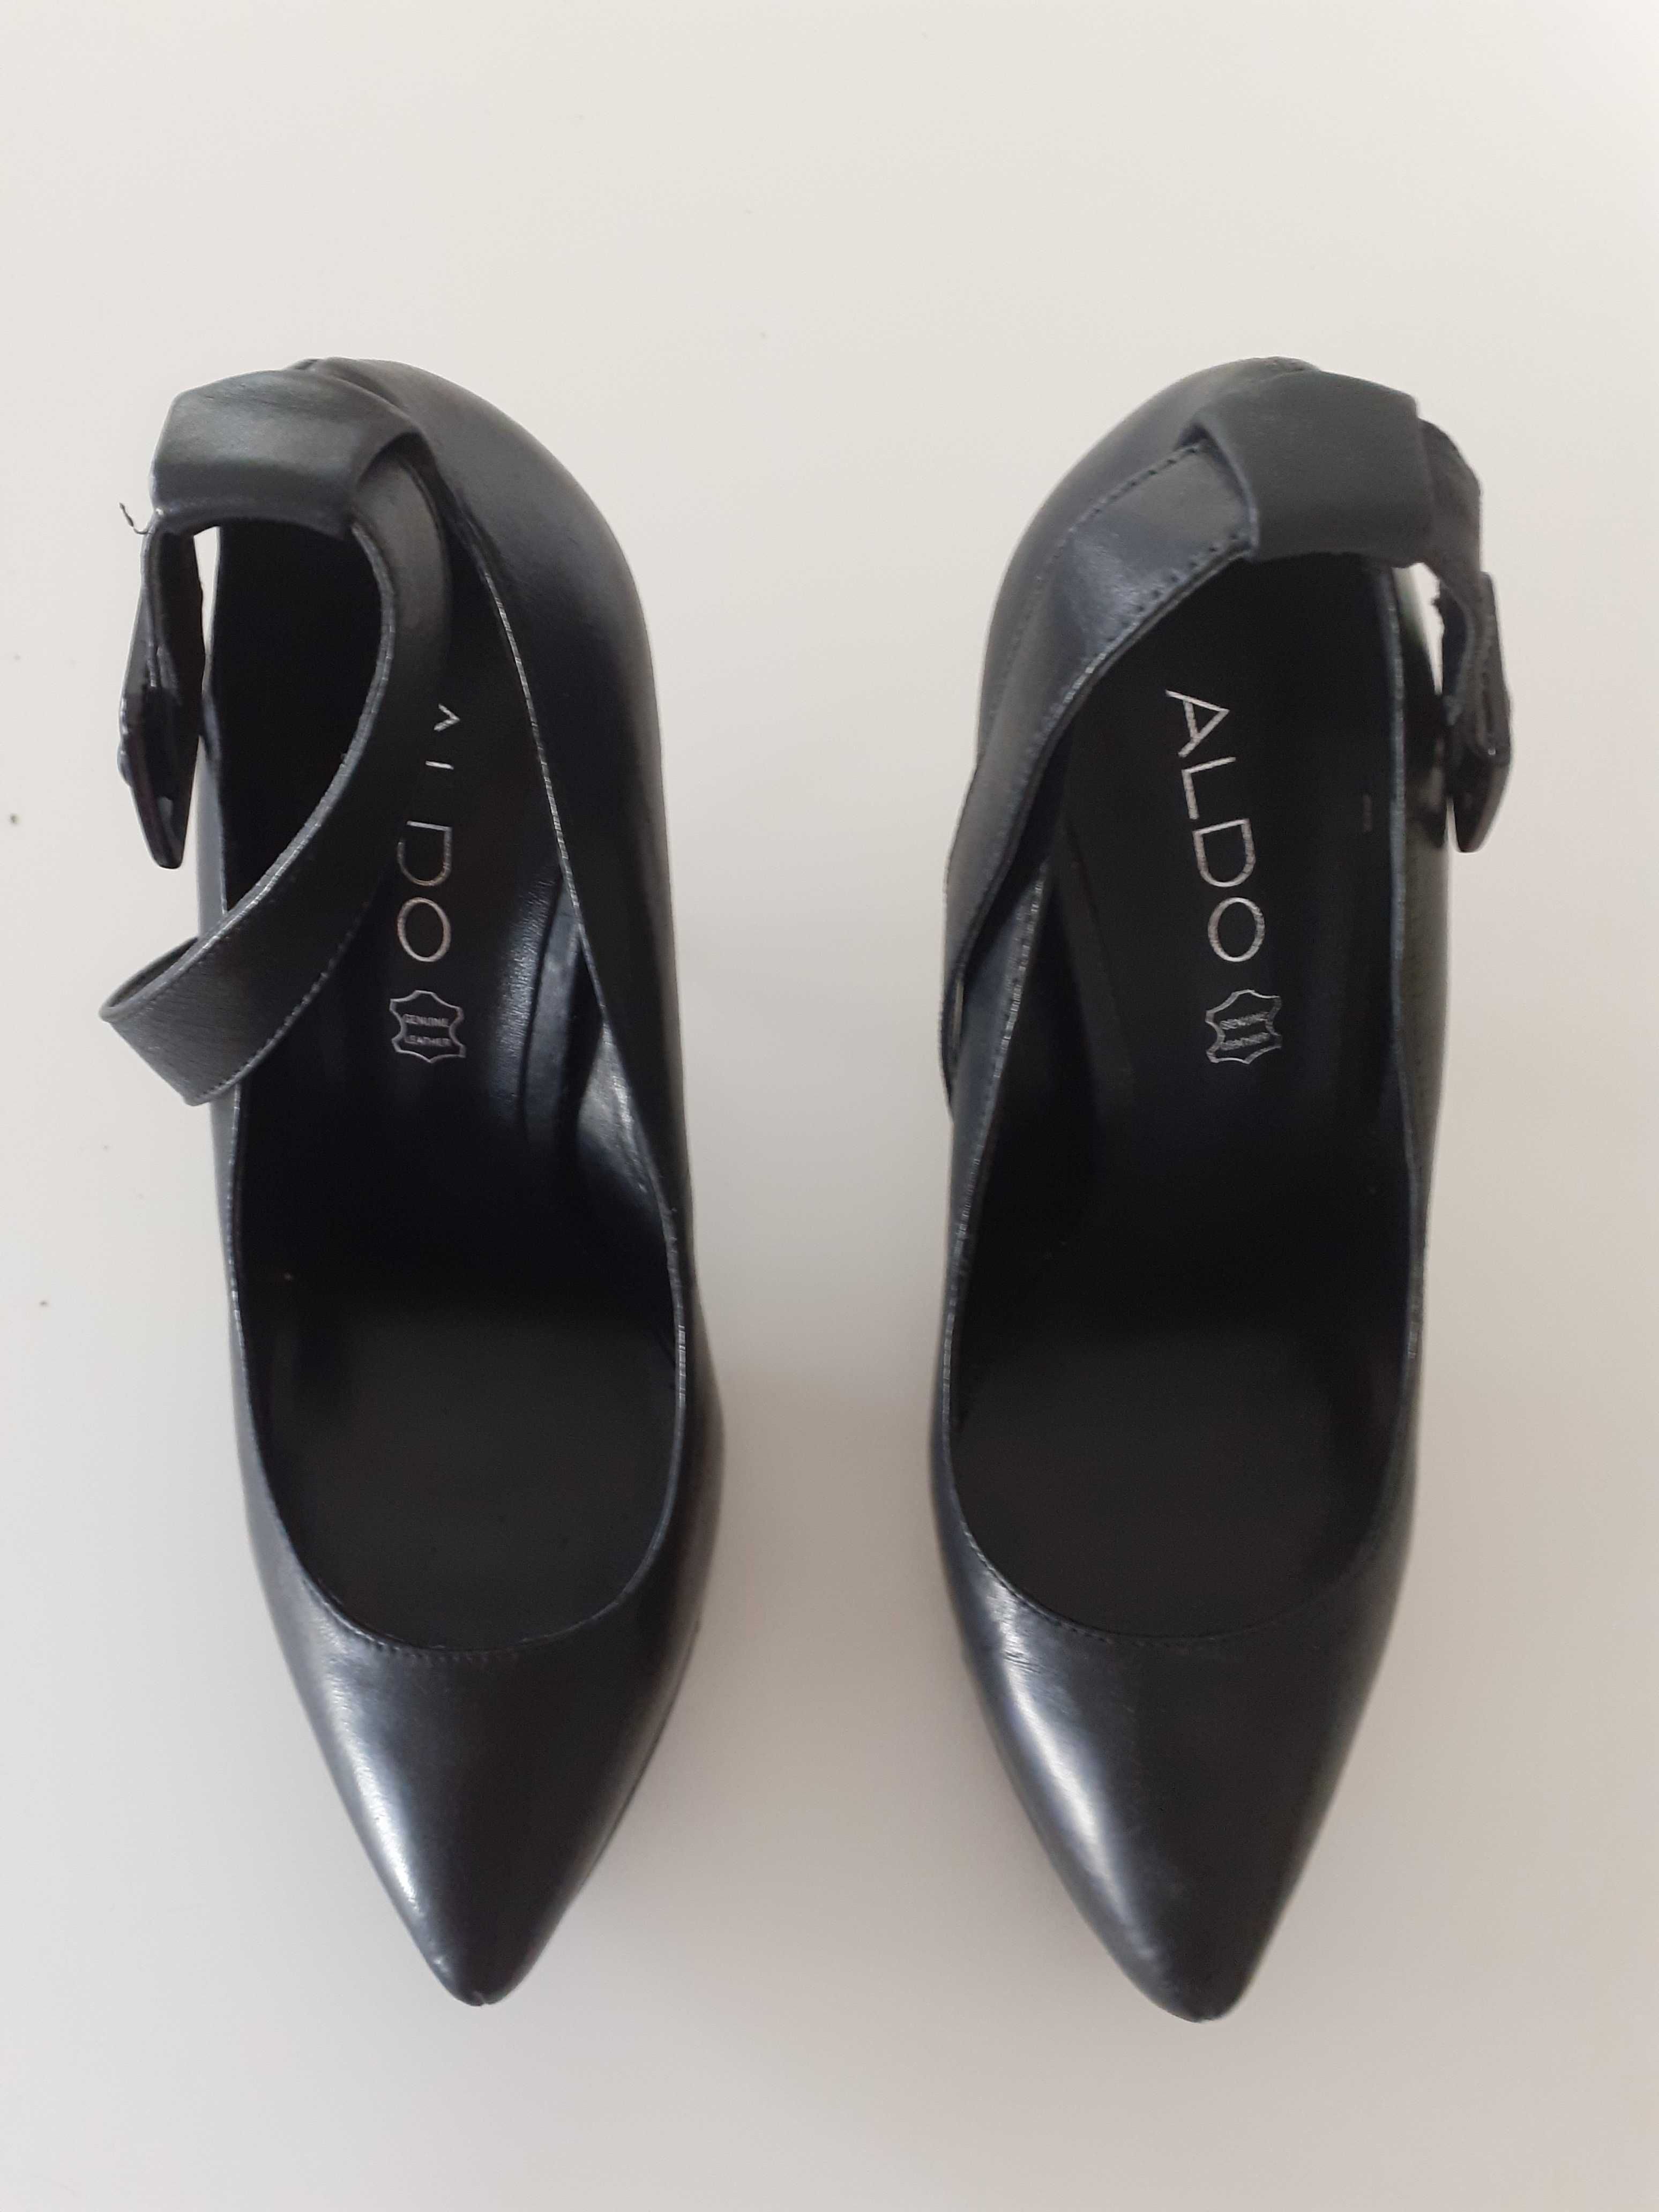 Sapatos ALDO pretos de salto alto com plataforma interior